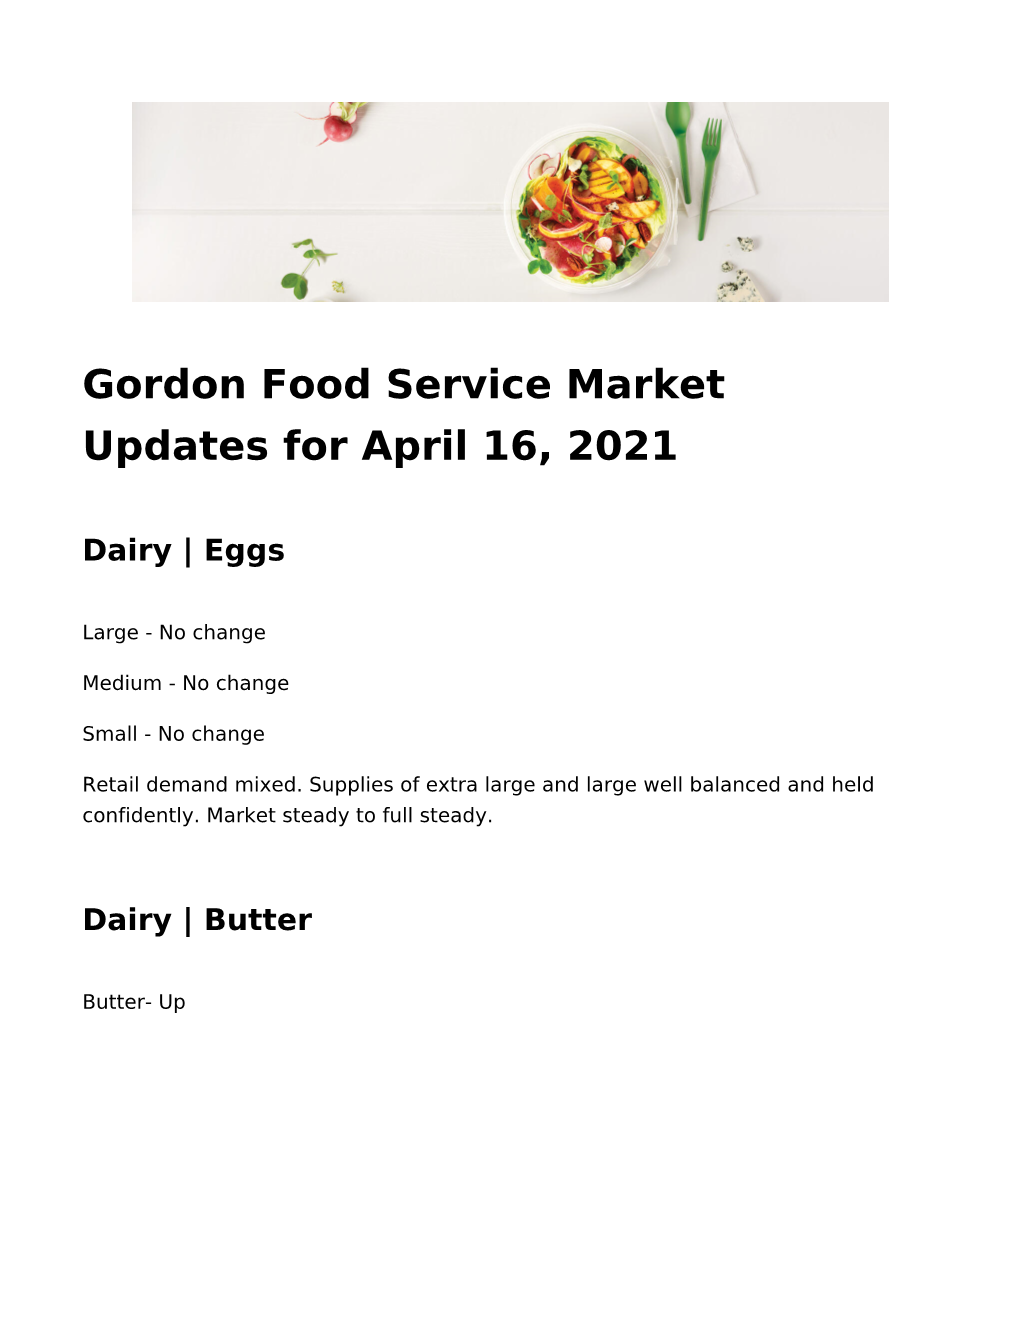 Gordon Food Service Market Updates for April 16, 2021